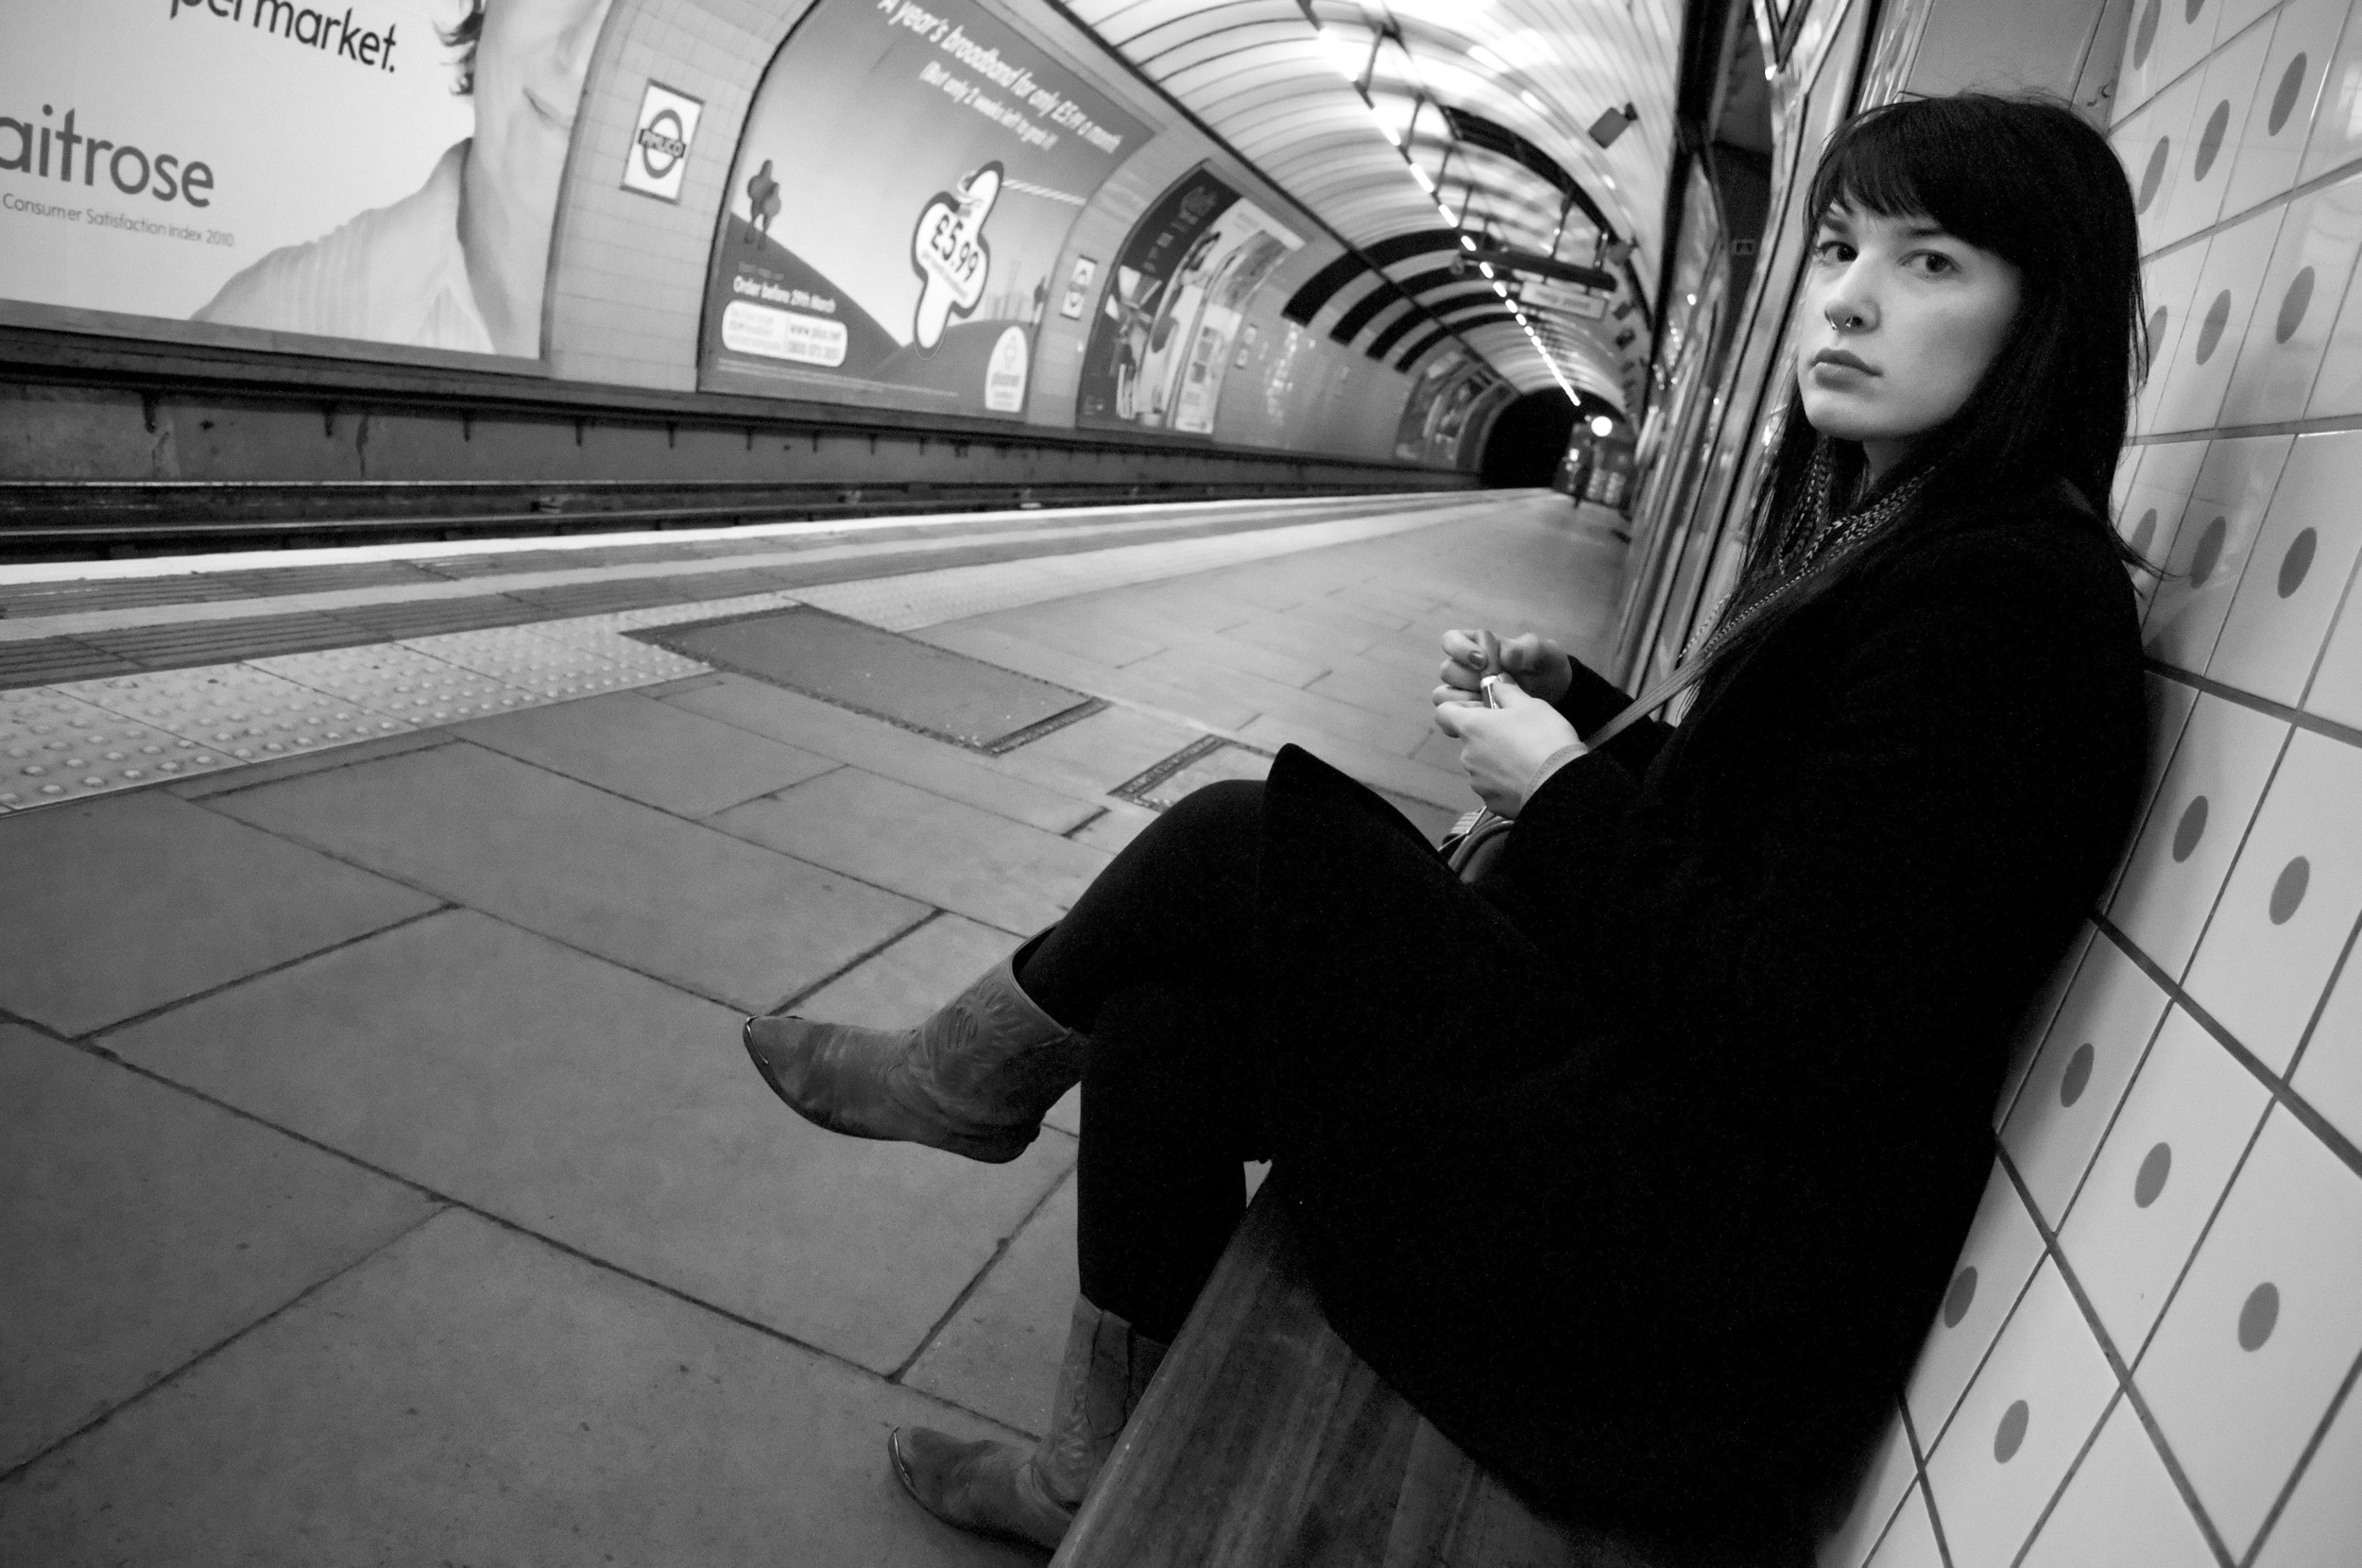  Jocelyn / London 2010 